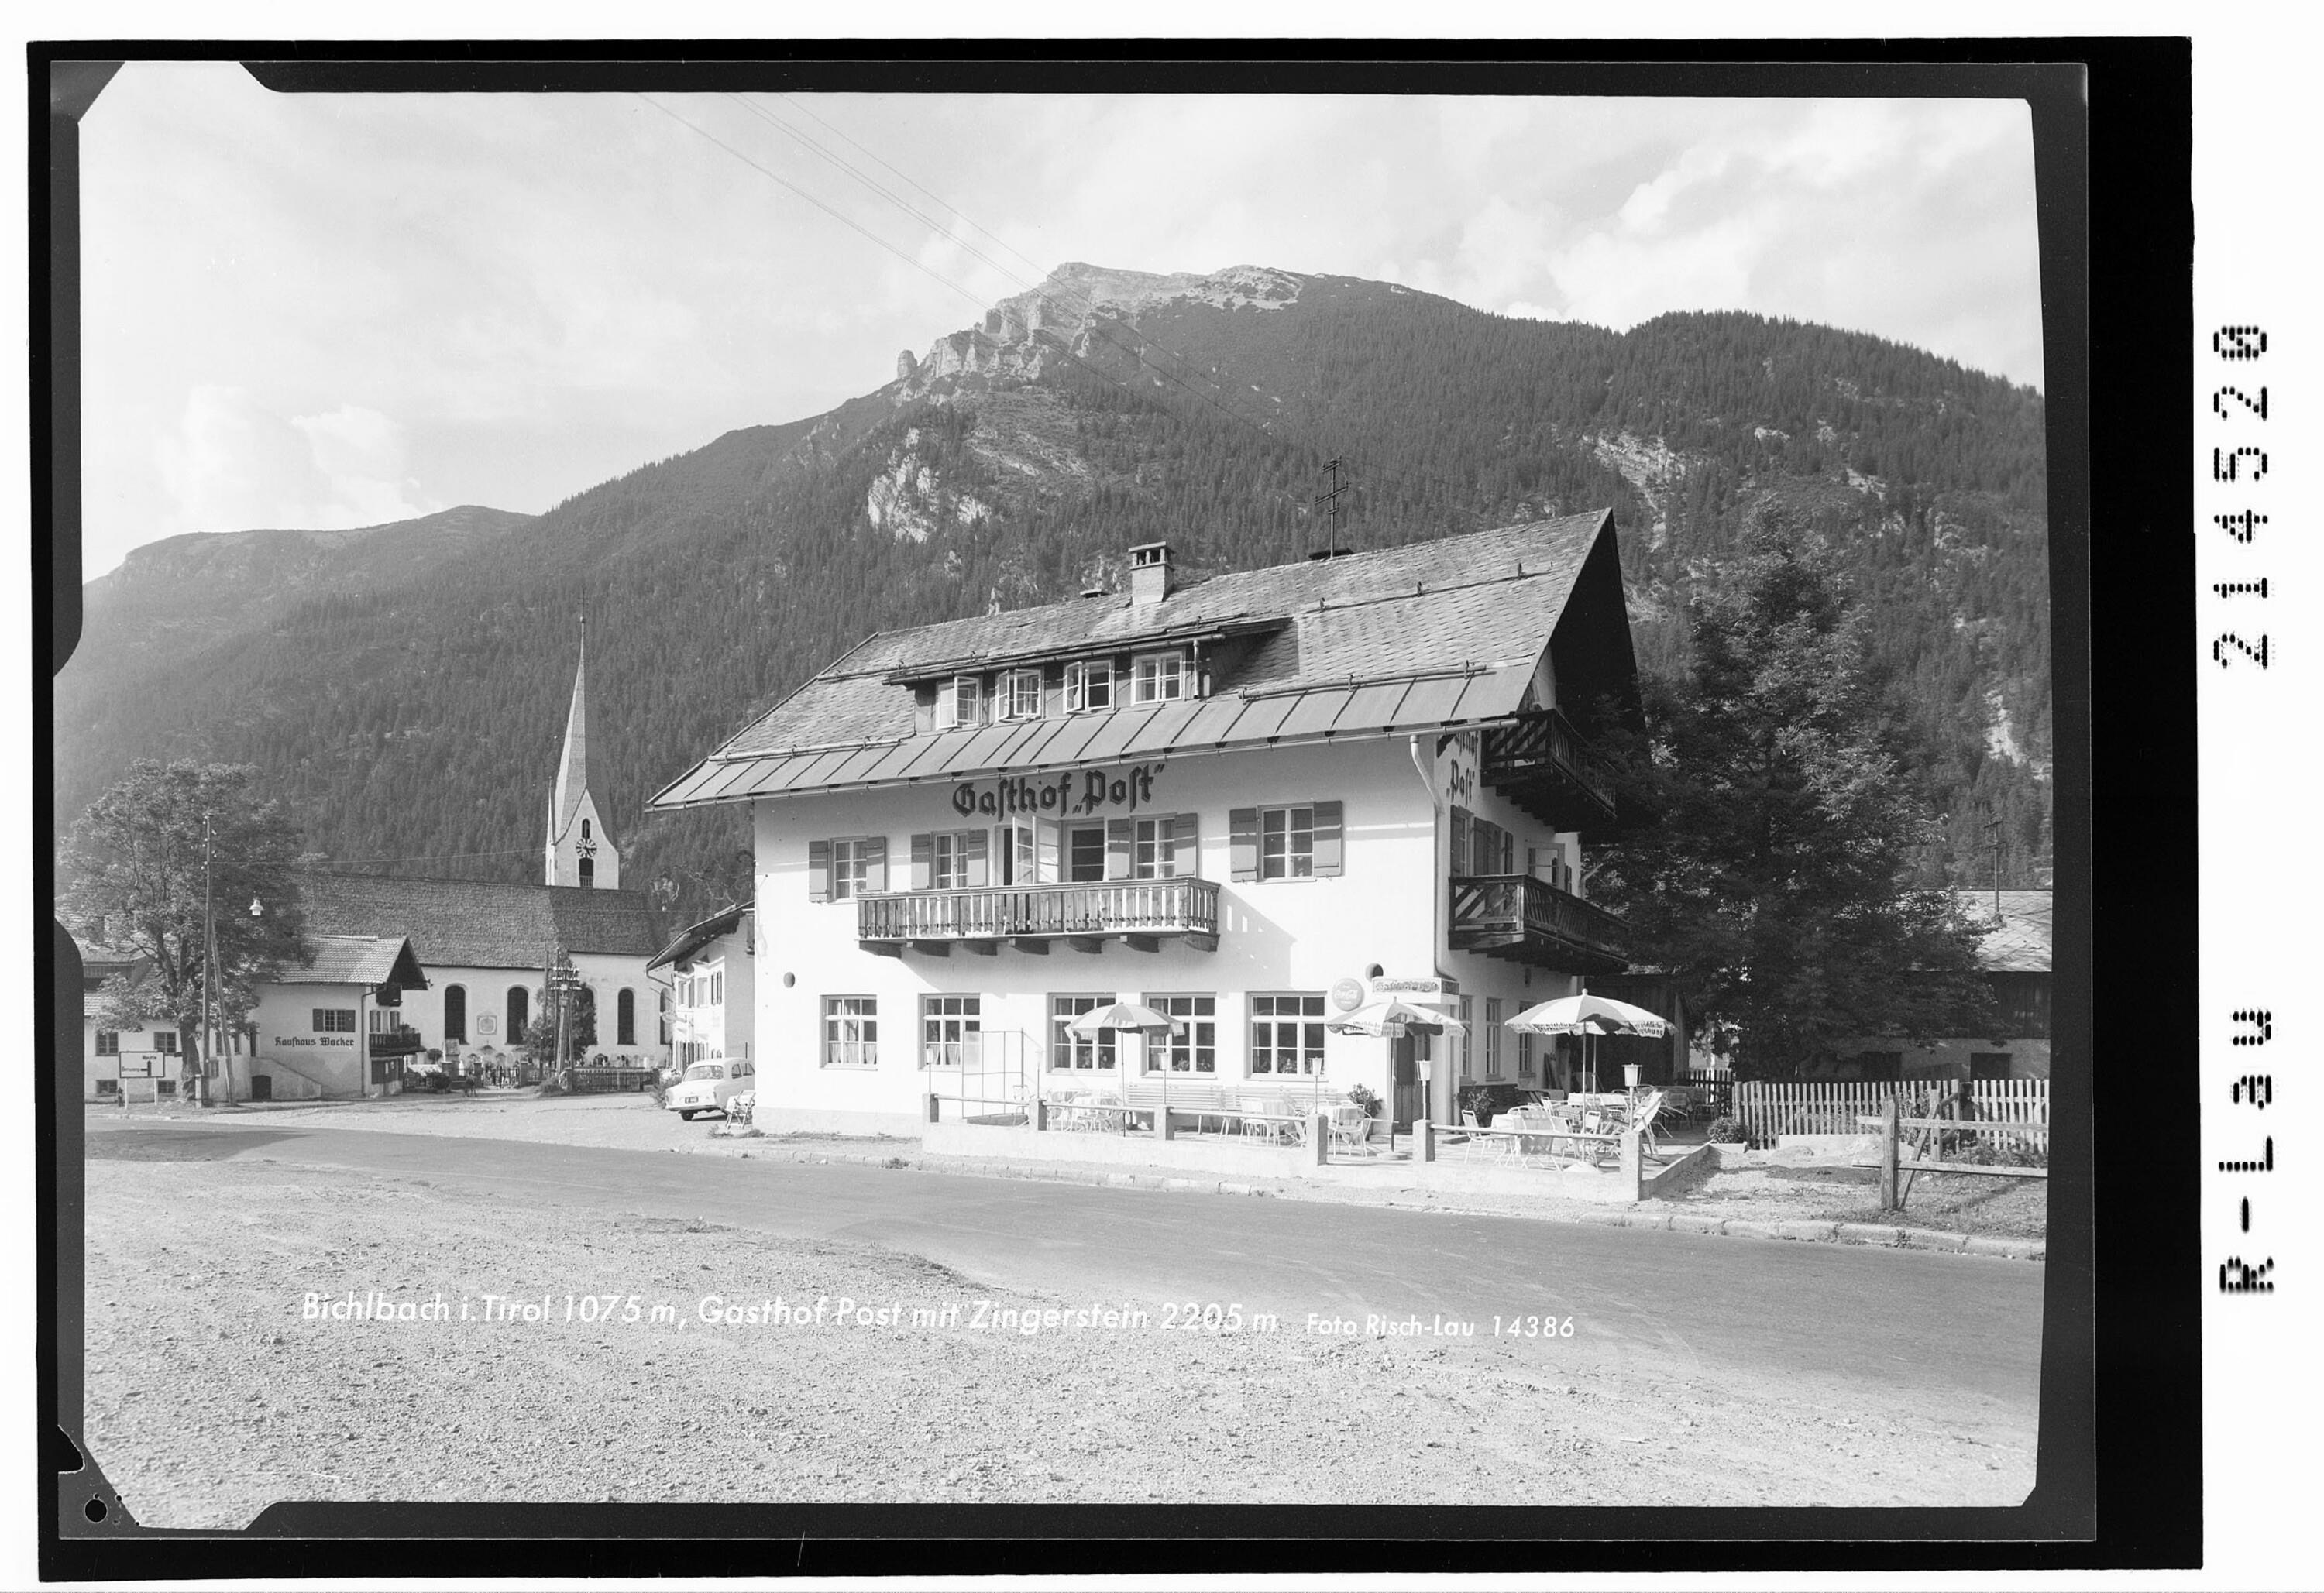 Bichlbach in Tirol 1975 m, Gasthof Post mit Zingerstein></div>


    <hr>
    <div class=